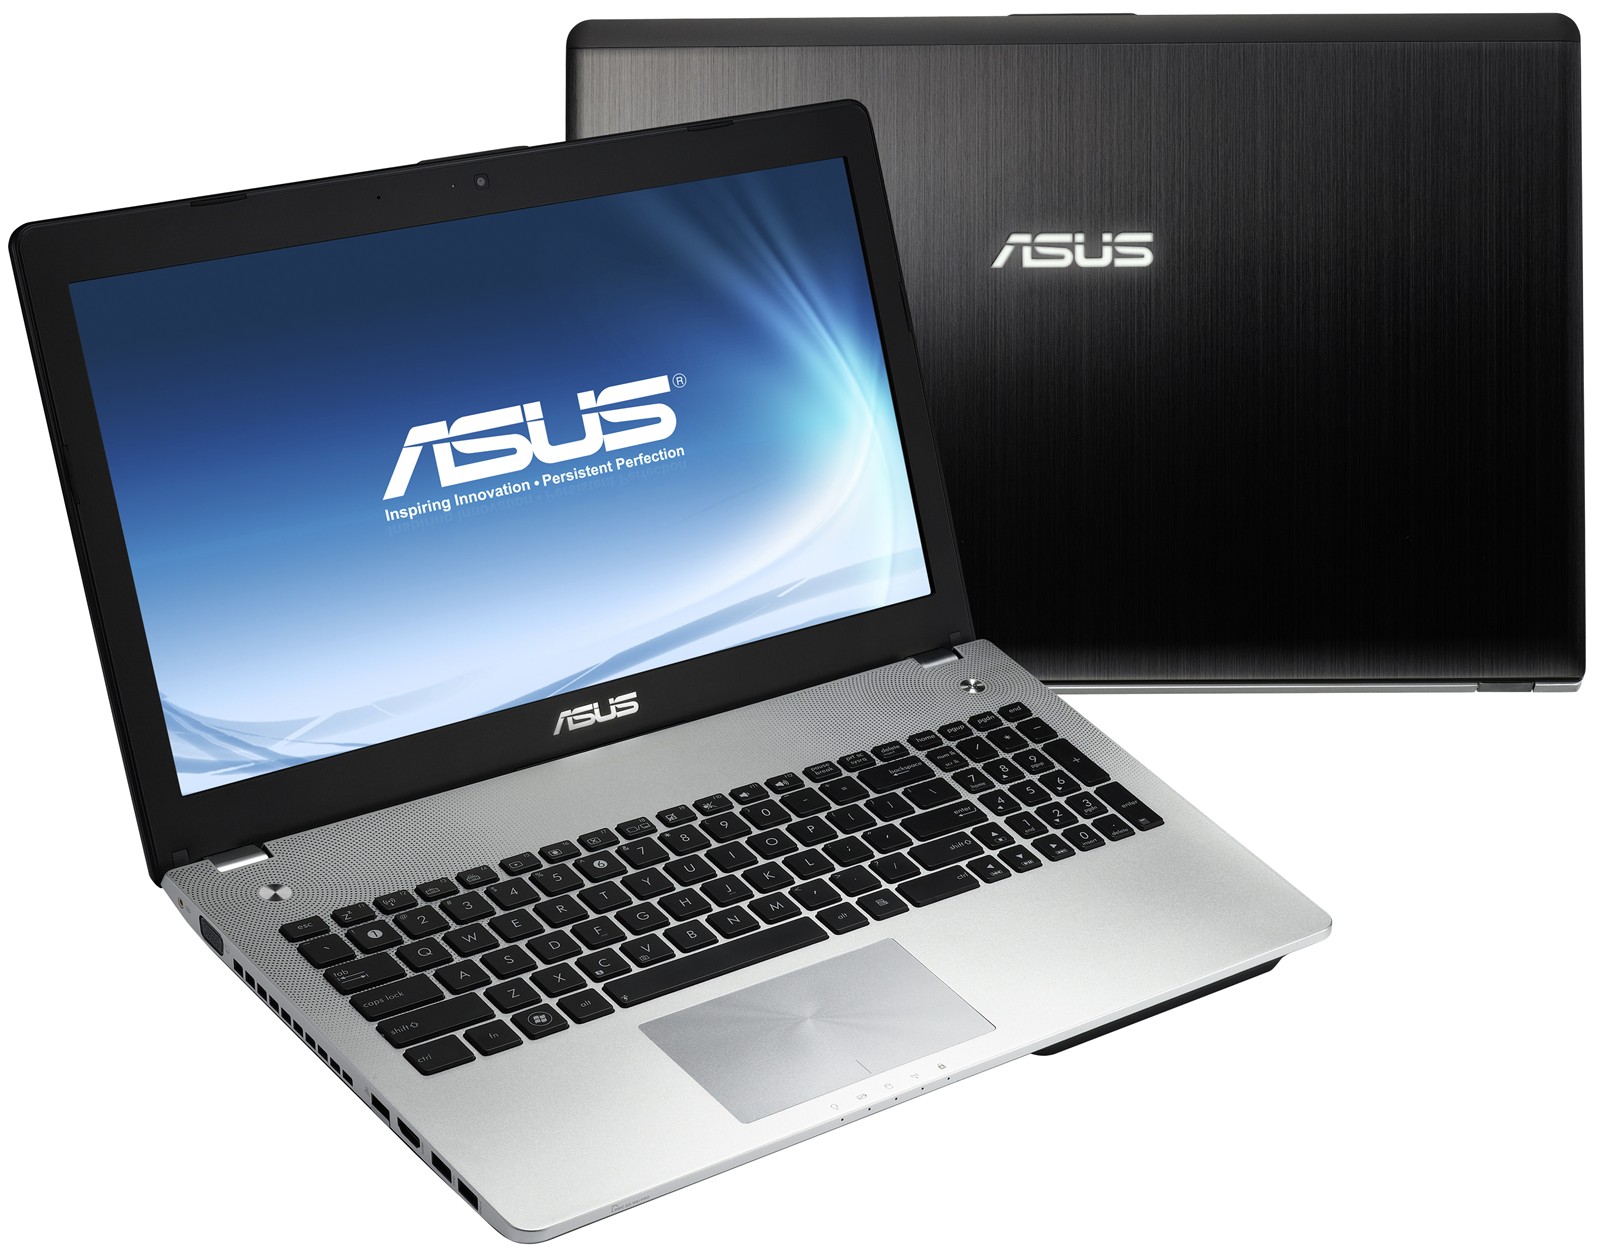 Asus+N56VZ-DS71+laptop1.jpg